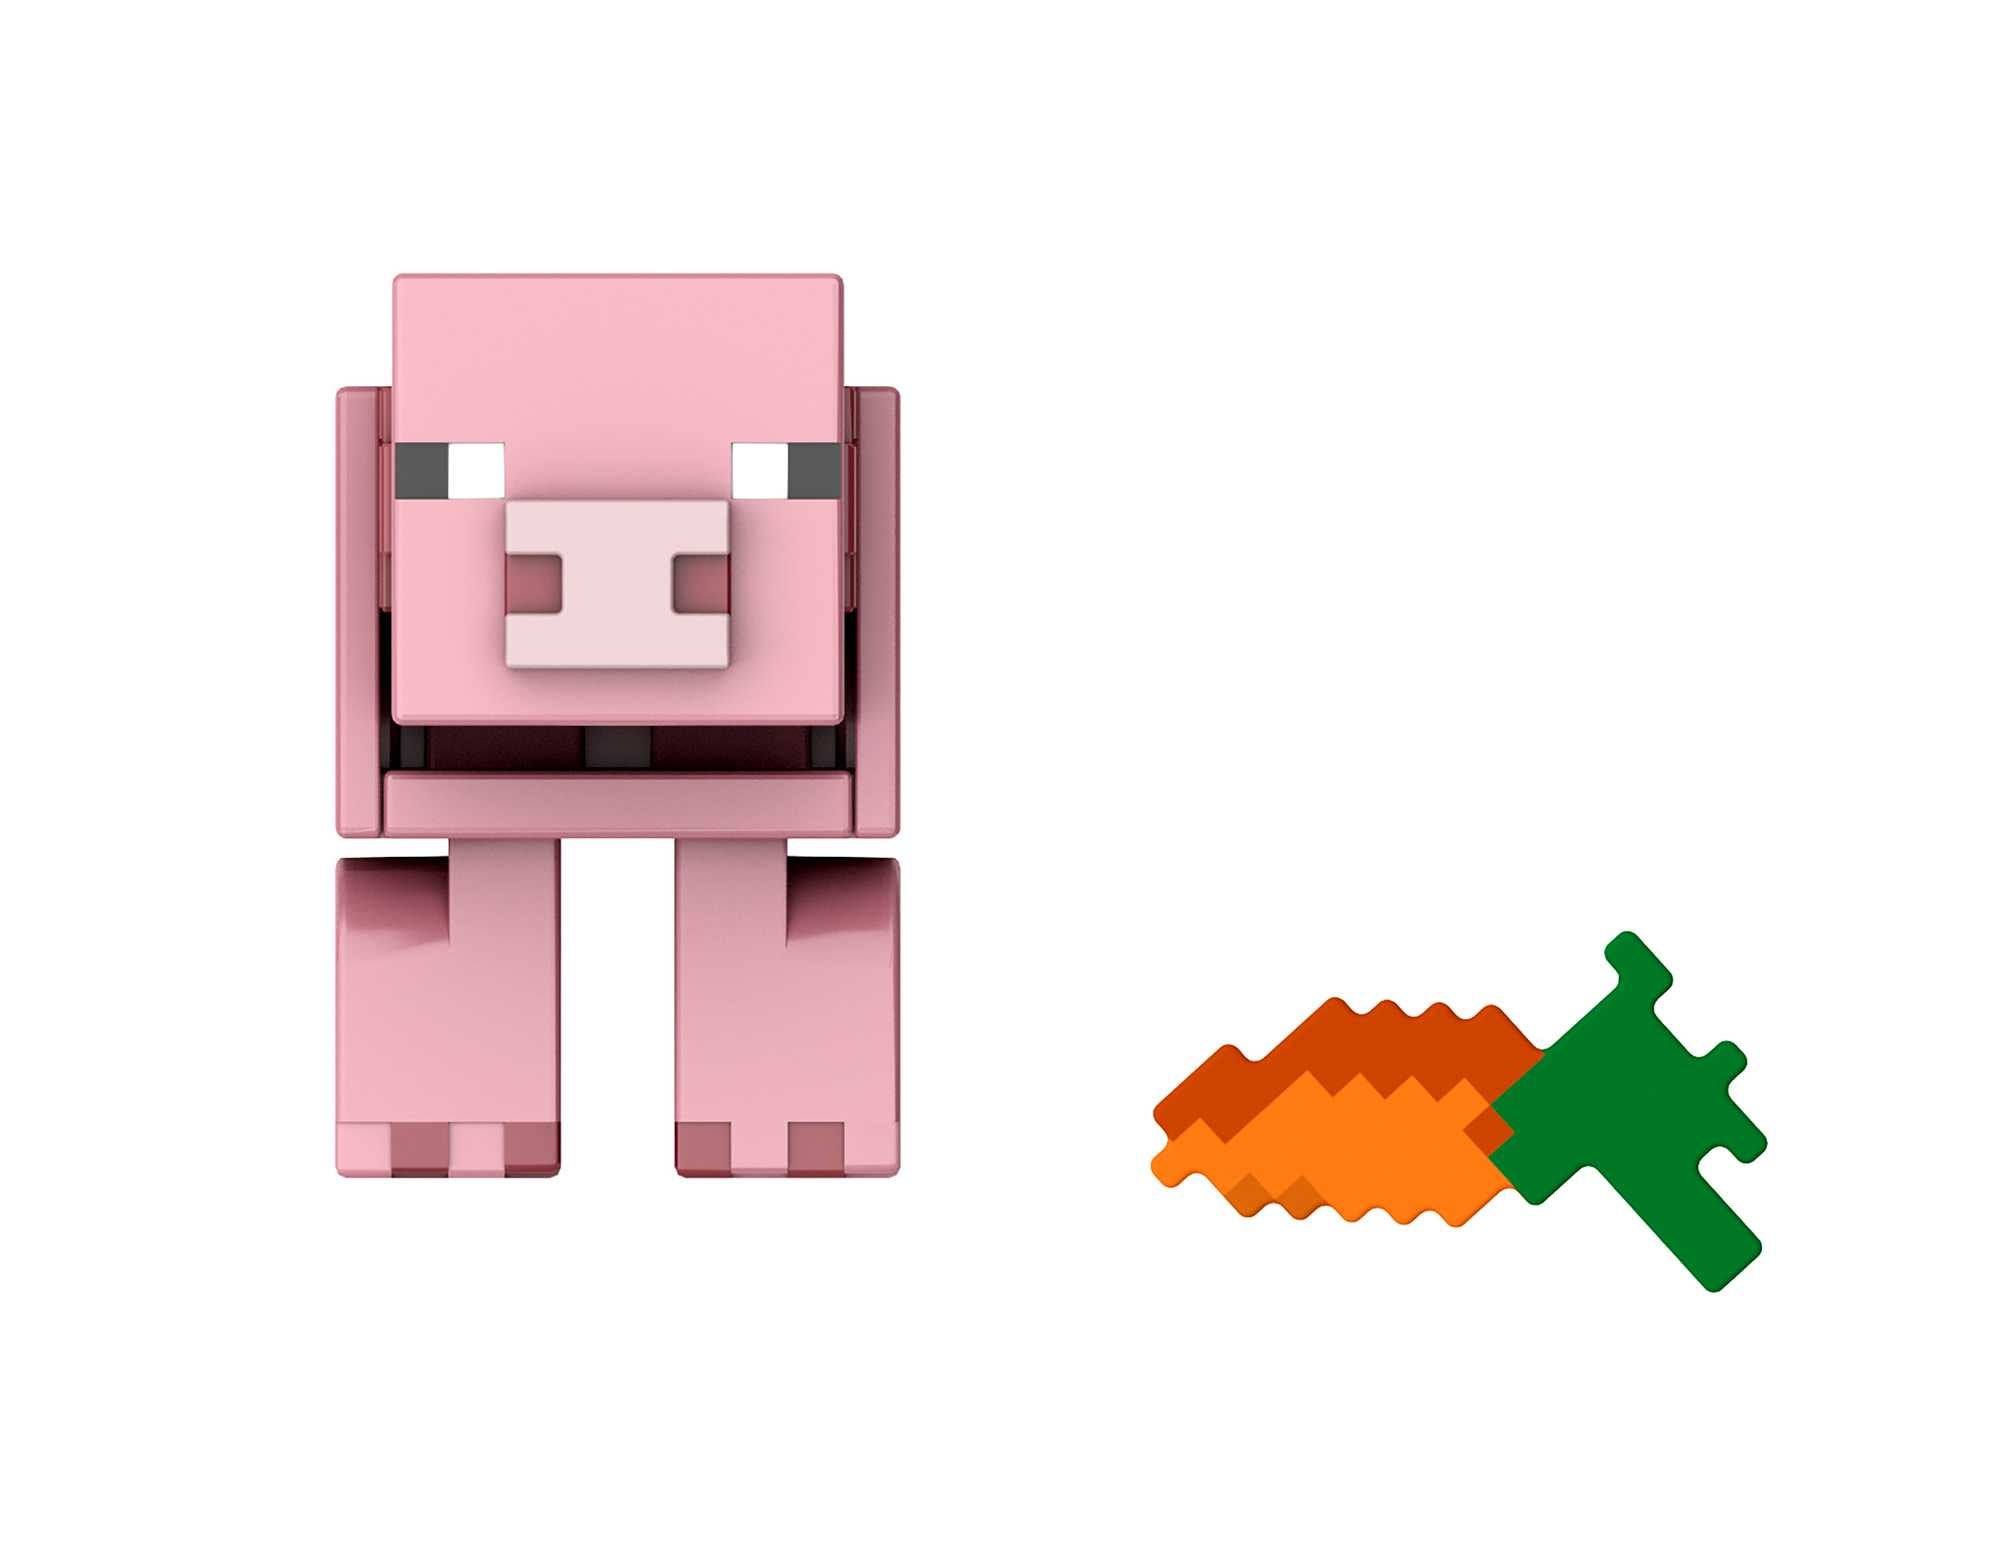 Minecraft - Biome Builds 8cm Figure - Pig (HLB18)